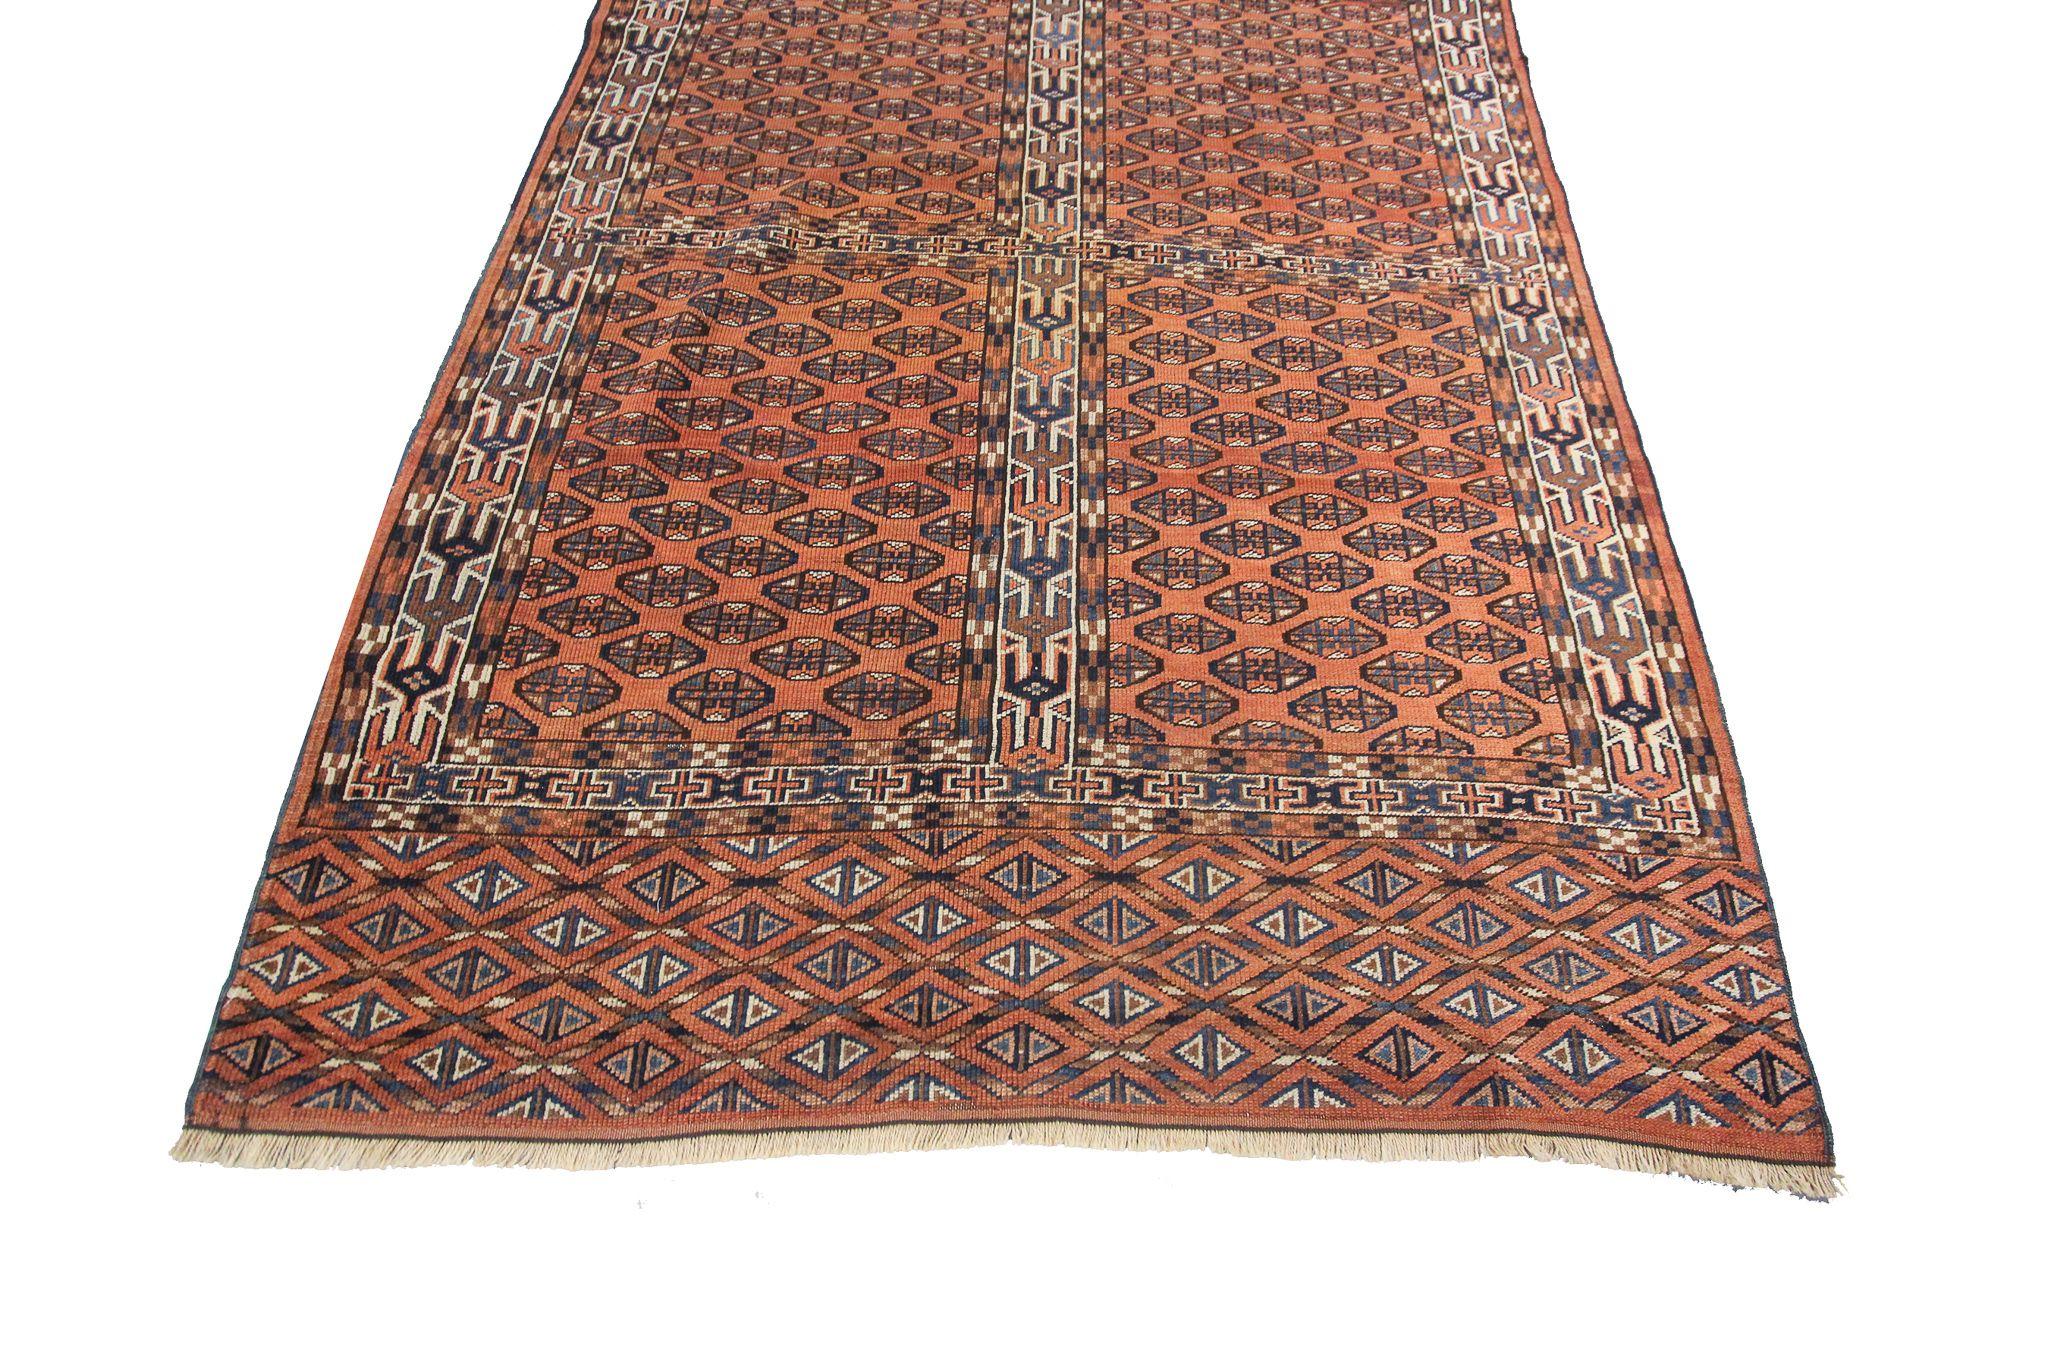 Antique Caucasian Geometric Tribal Rug Caucasian Rug Rare Design Allover 1920

4'1